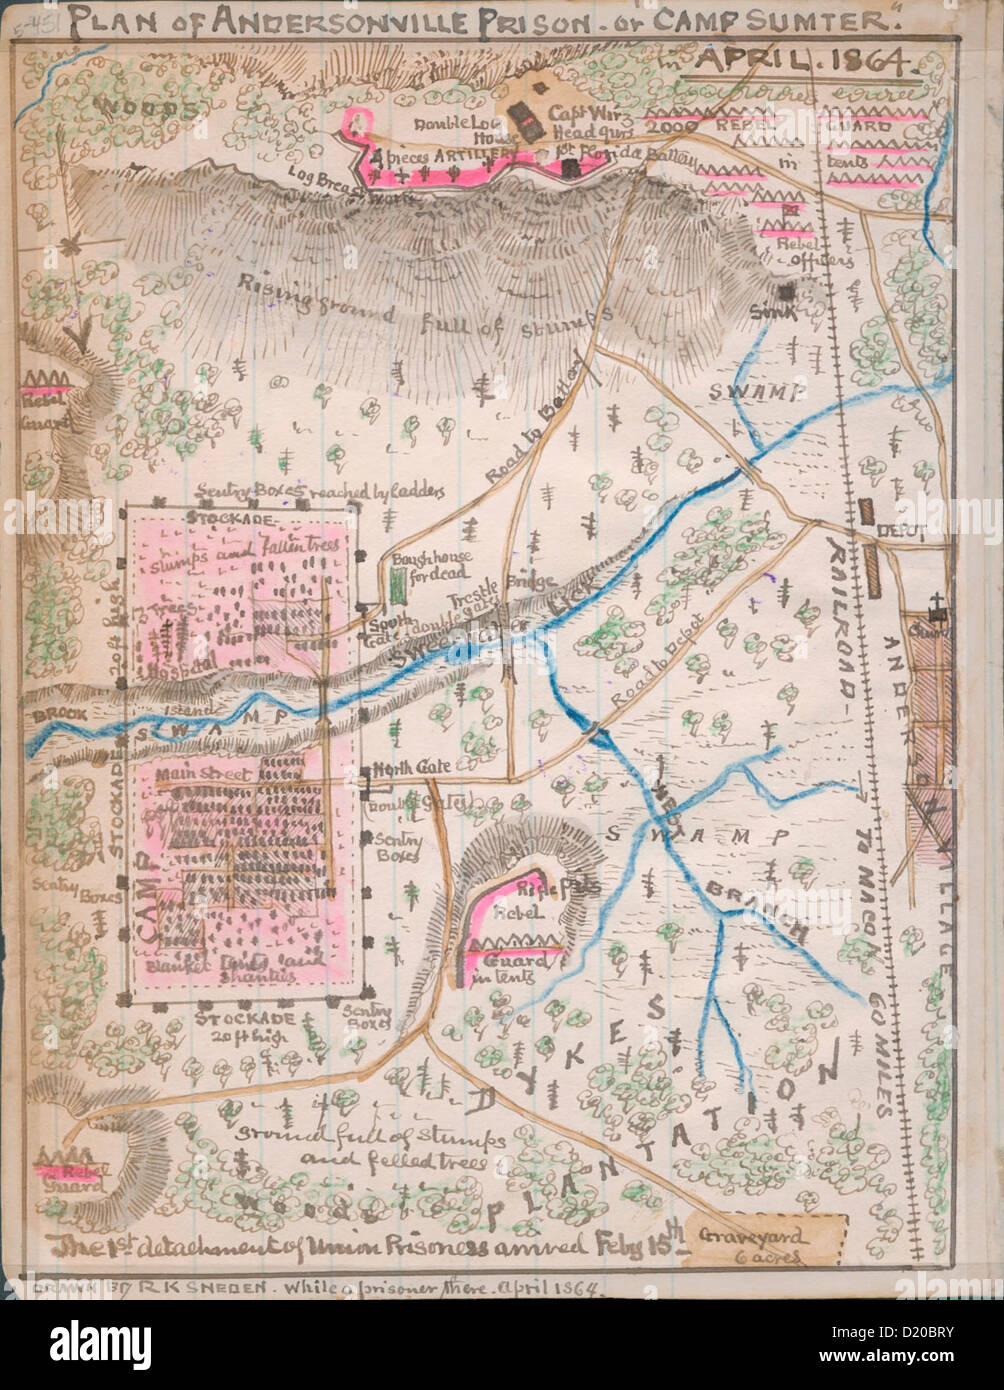 Plan von Andersonville Gefängnis oder Camp Sumter April 1864 Stockfoto